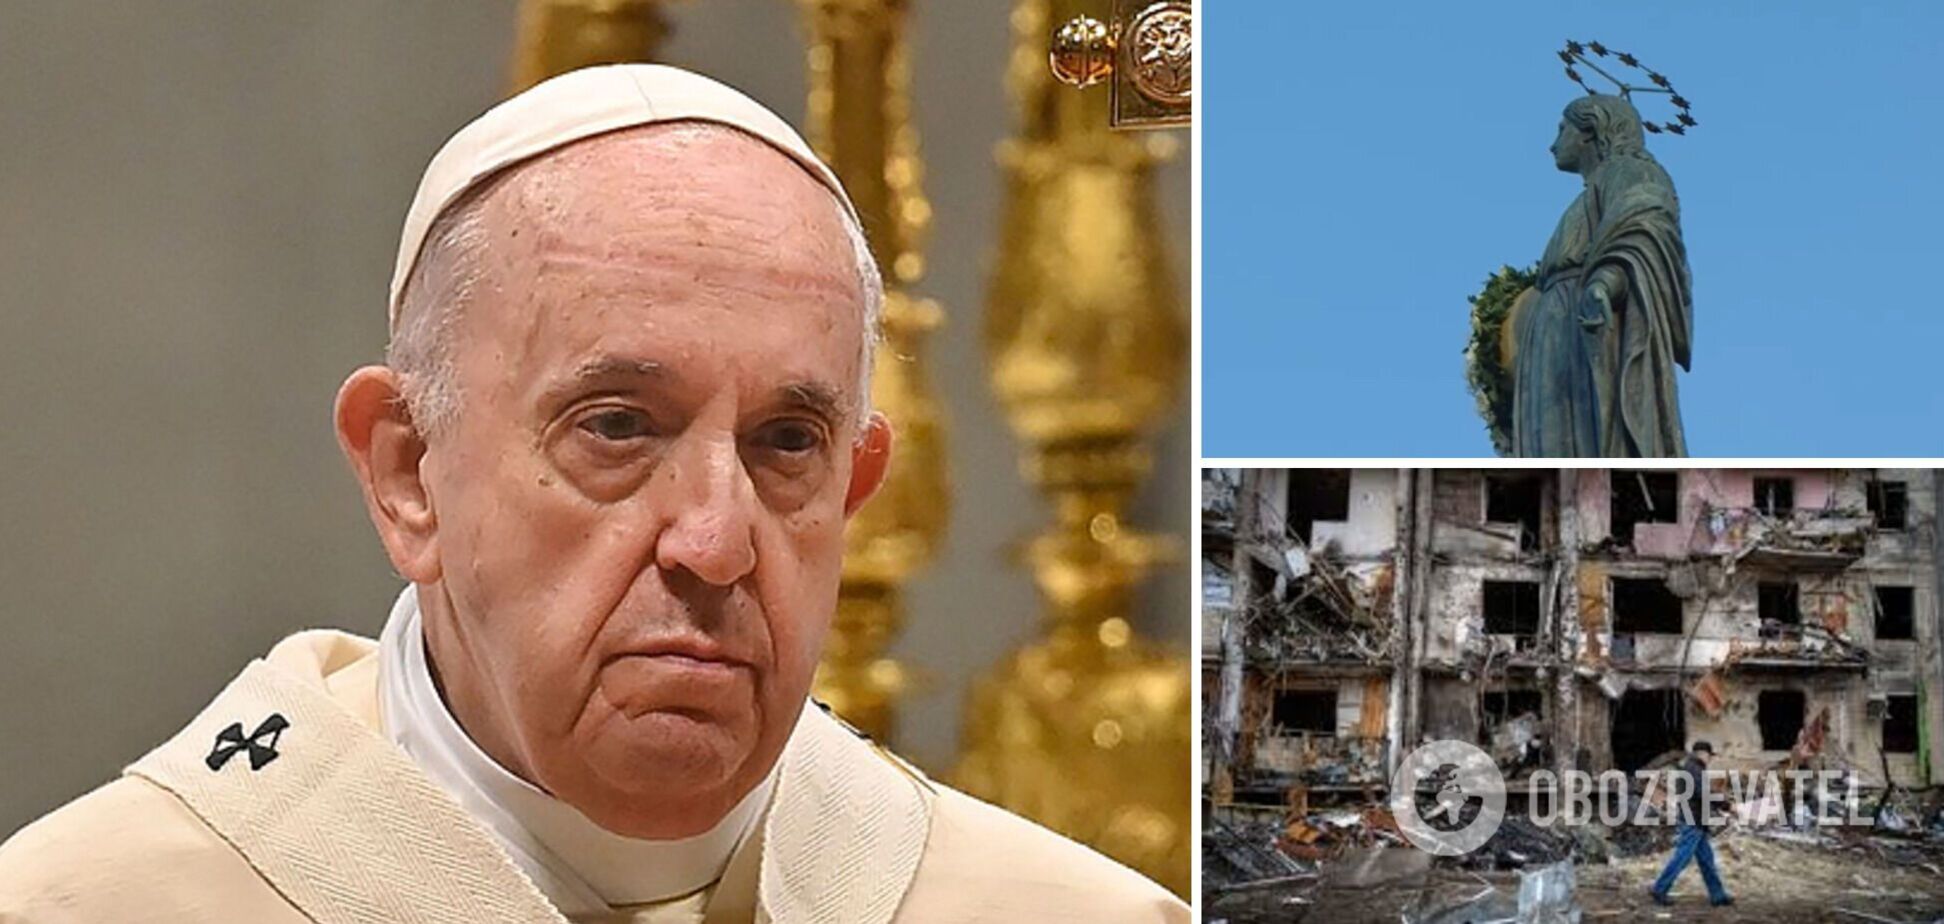 Папа Римський розплакався, згадавши в молитві про народ України. Відео